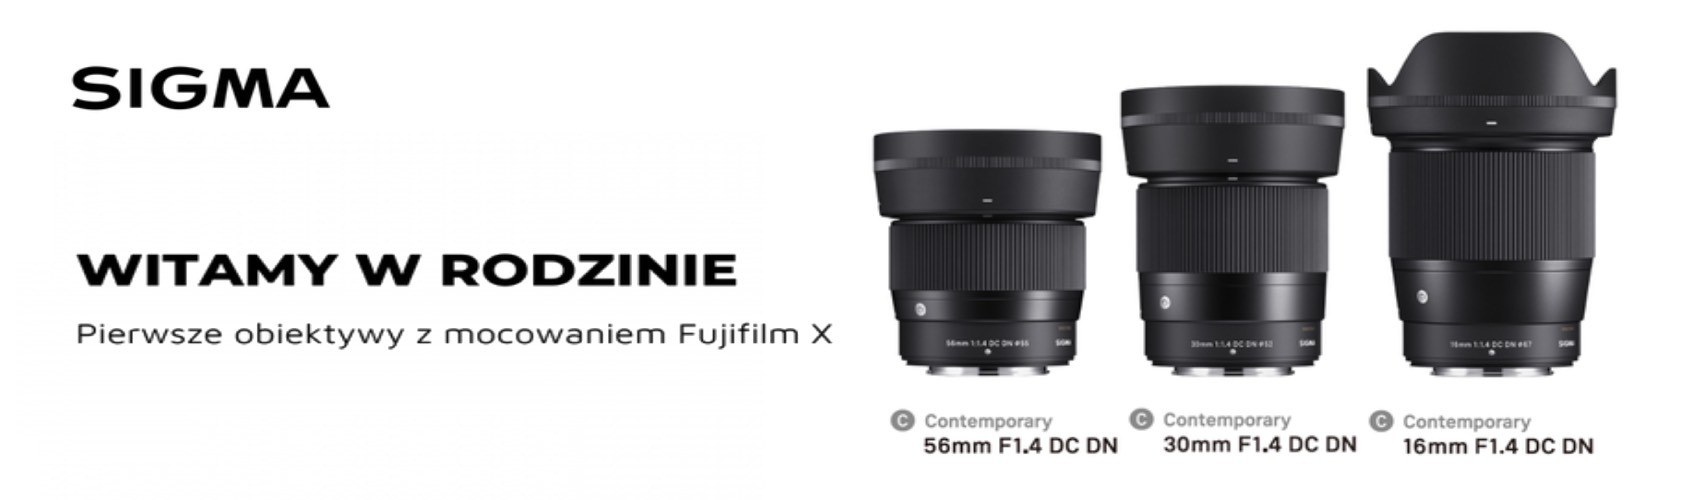 Zobacz pierwsze obiektywy z mocowaniem Fujifilm X- teraz w przedsprzedaży